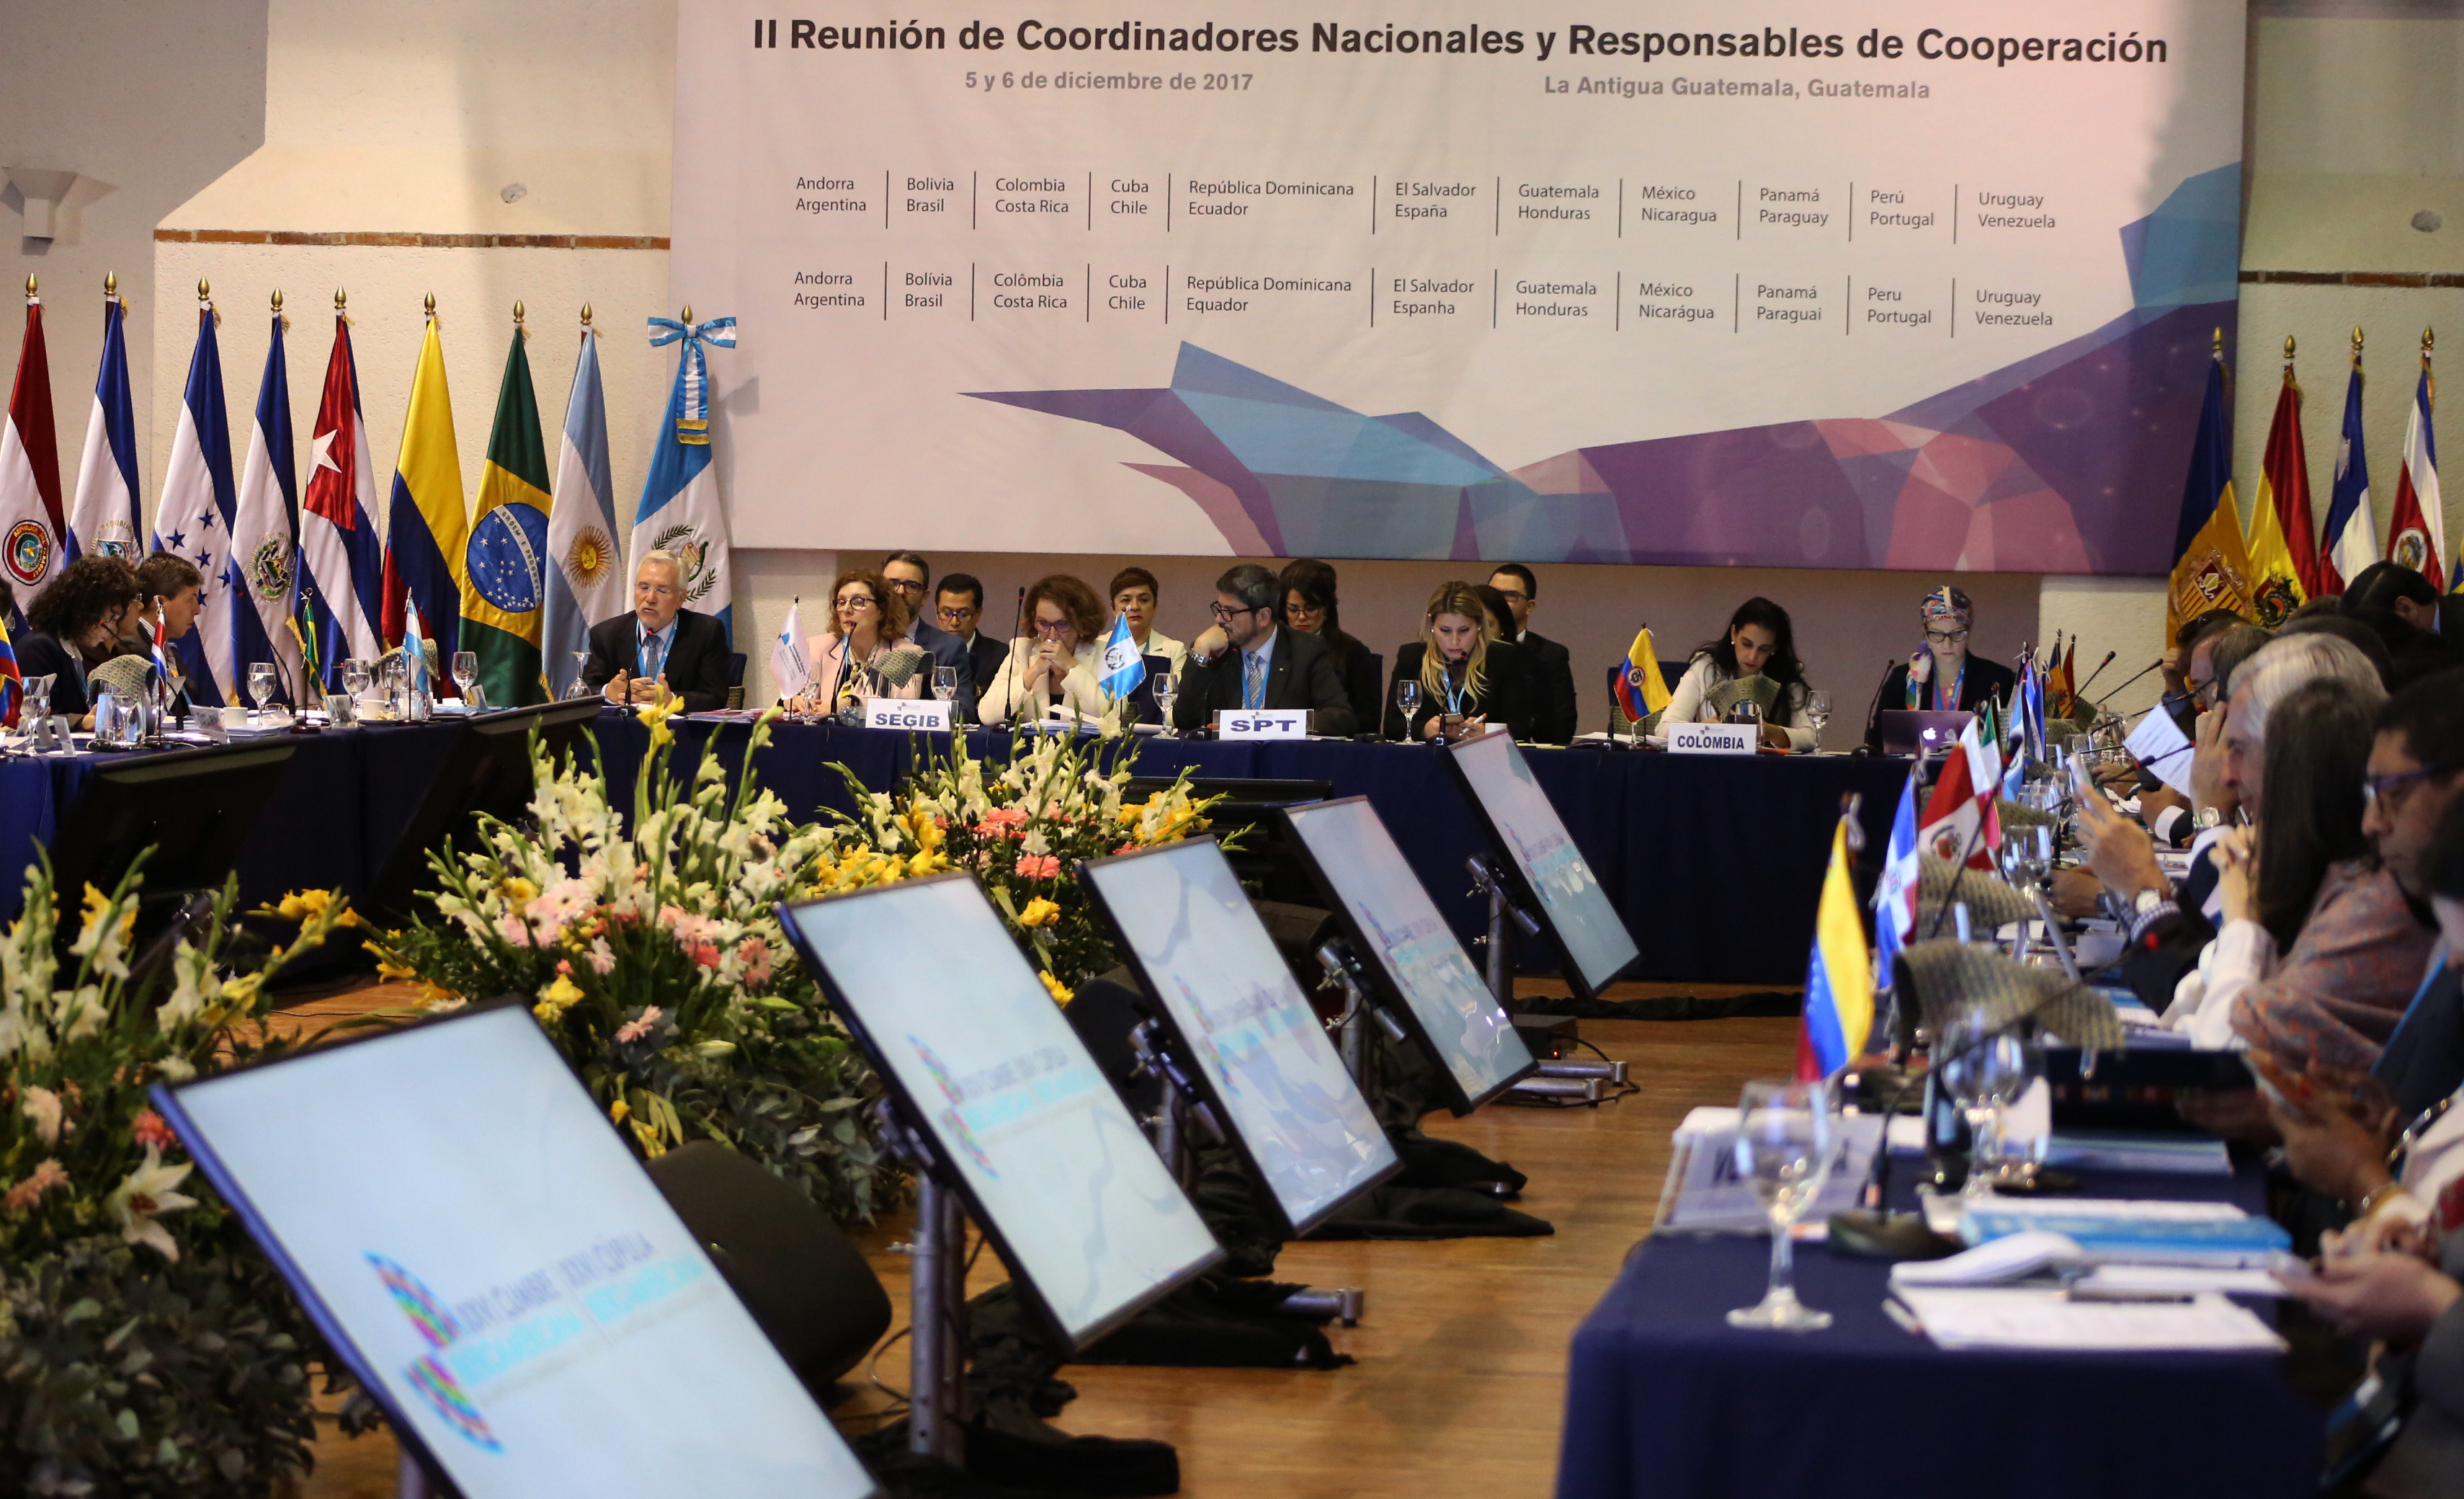 Colombia participó en la II Reunión de Coordinadores Nacionales y Responsables de Cooperación de la Conferencia Iberoamericana